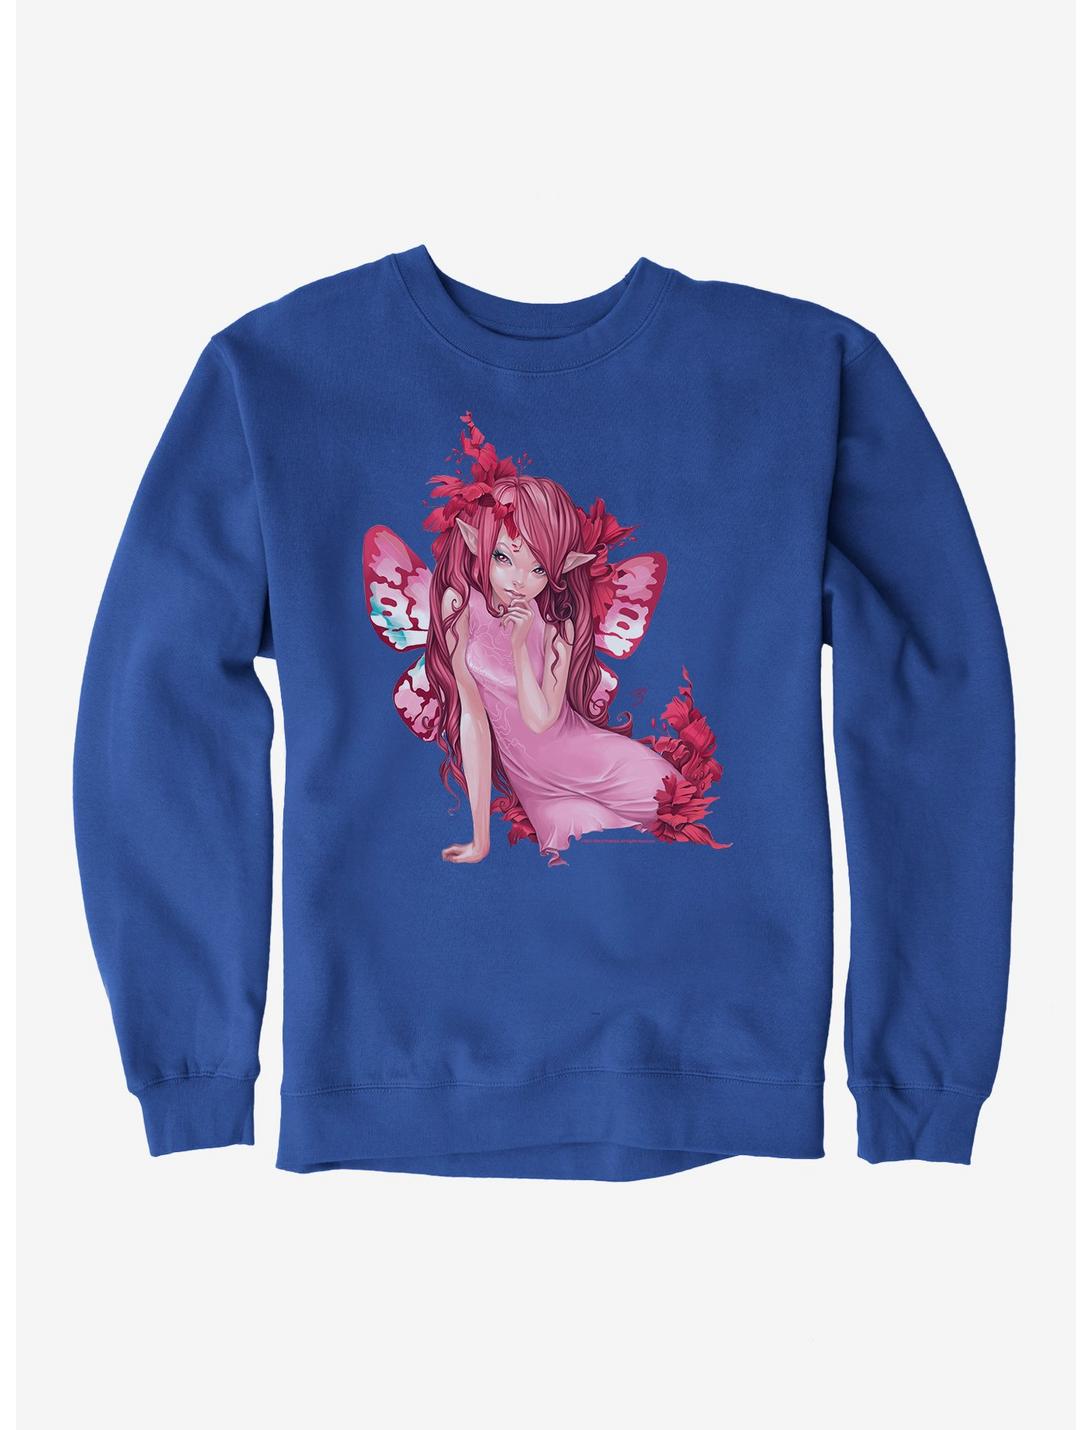 Fairies By Trick Dream Girl Fairy Sweatshirt, ROYAL BLUE, hi-res